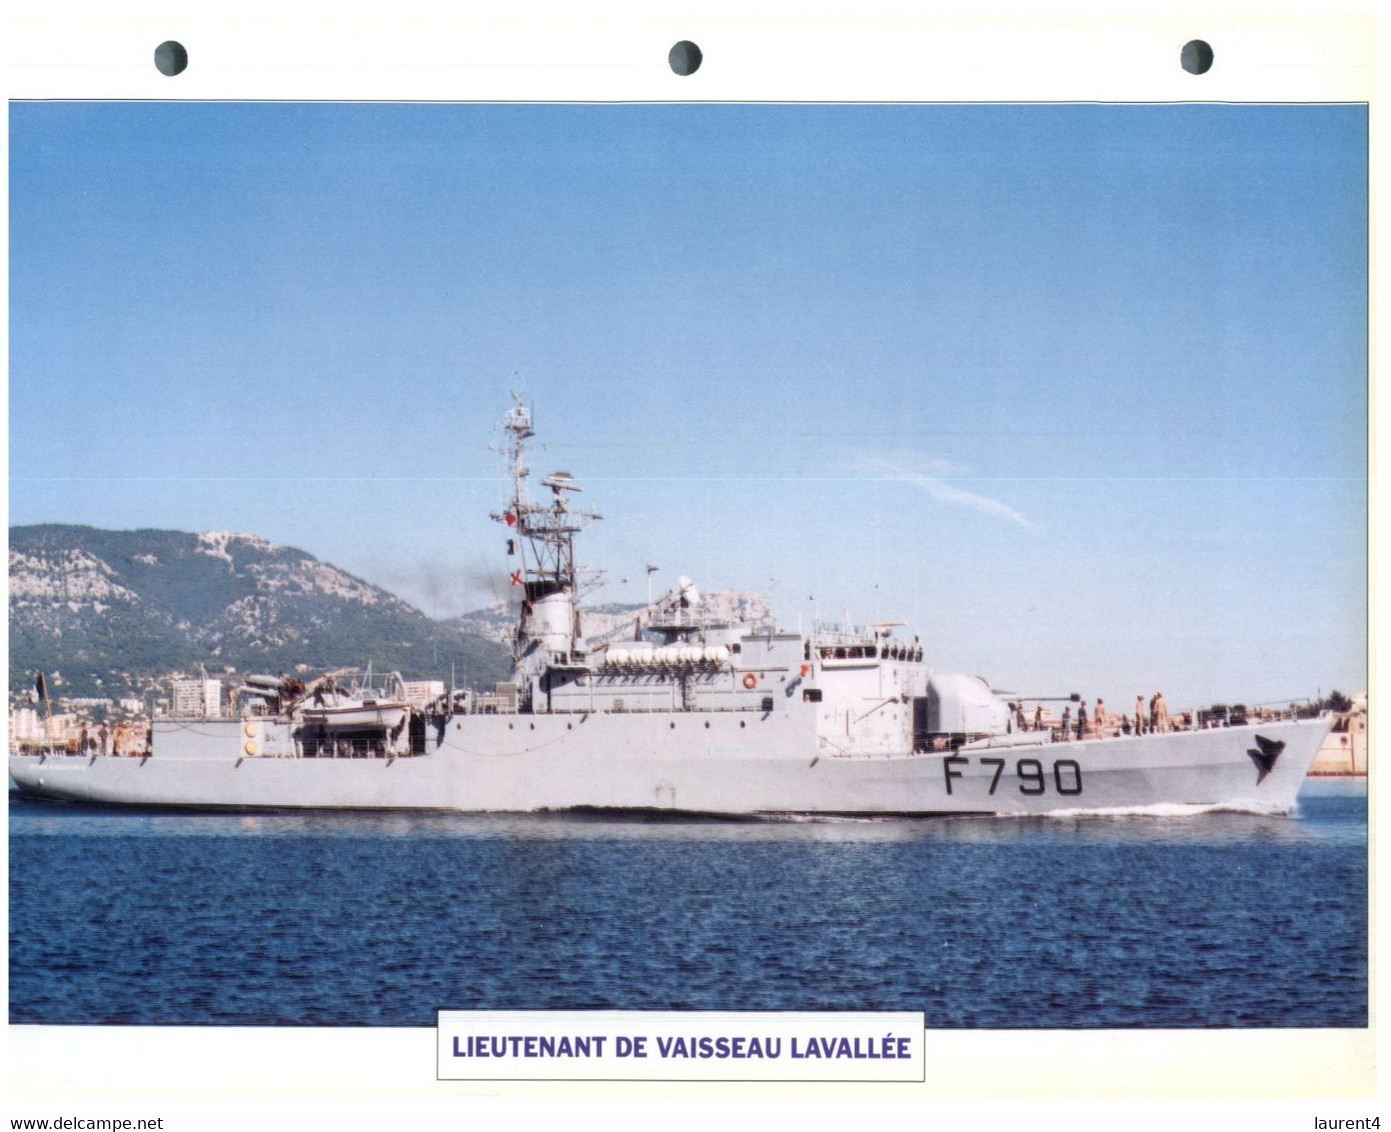 (25 X 19 Cm) (8-9-2021) - T - Photo And Info Sheet On Warship - France Navy - Lieutenant De Vaisseau Lavallée - Bateaux